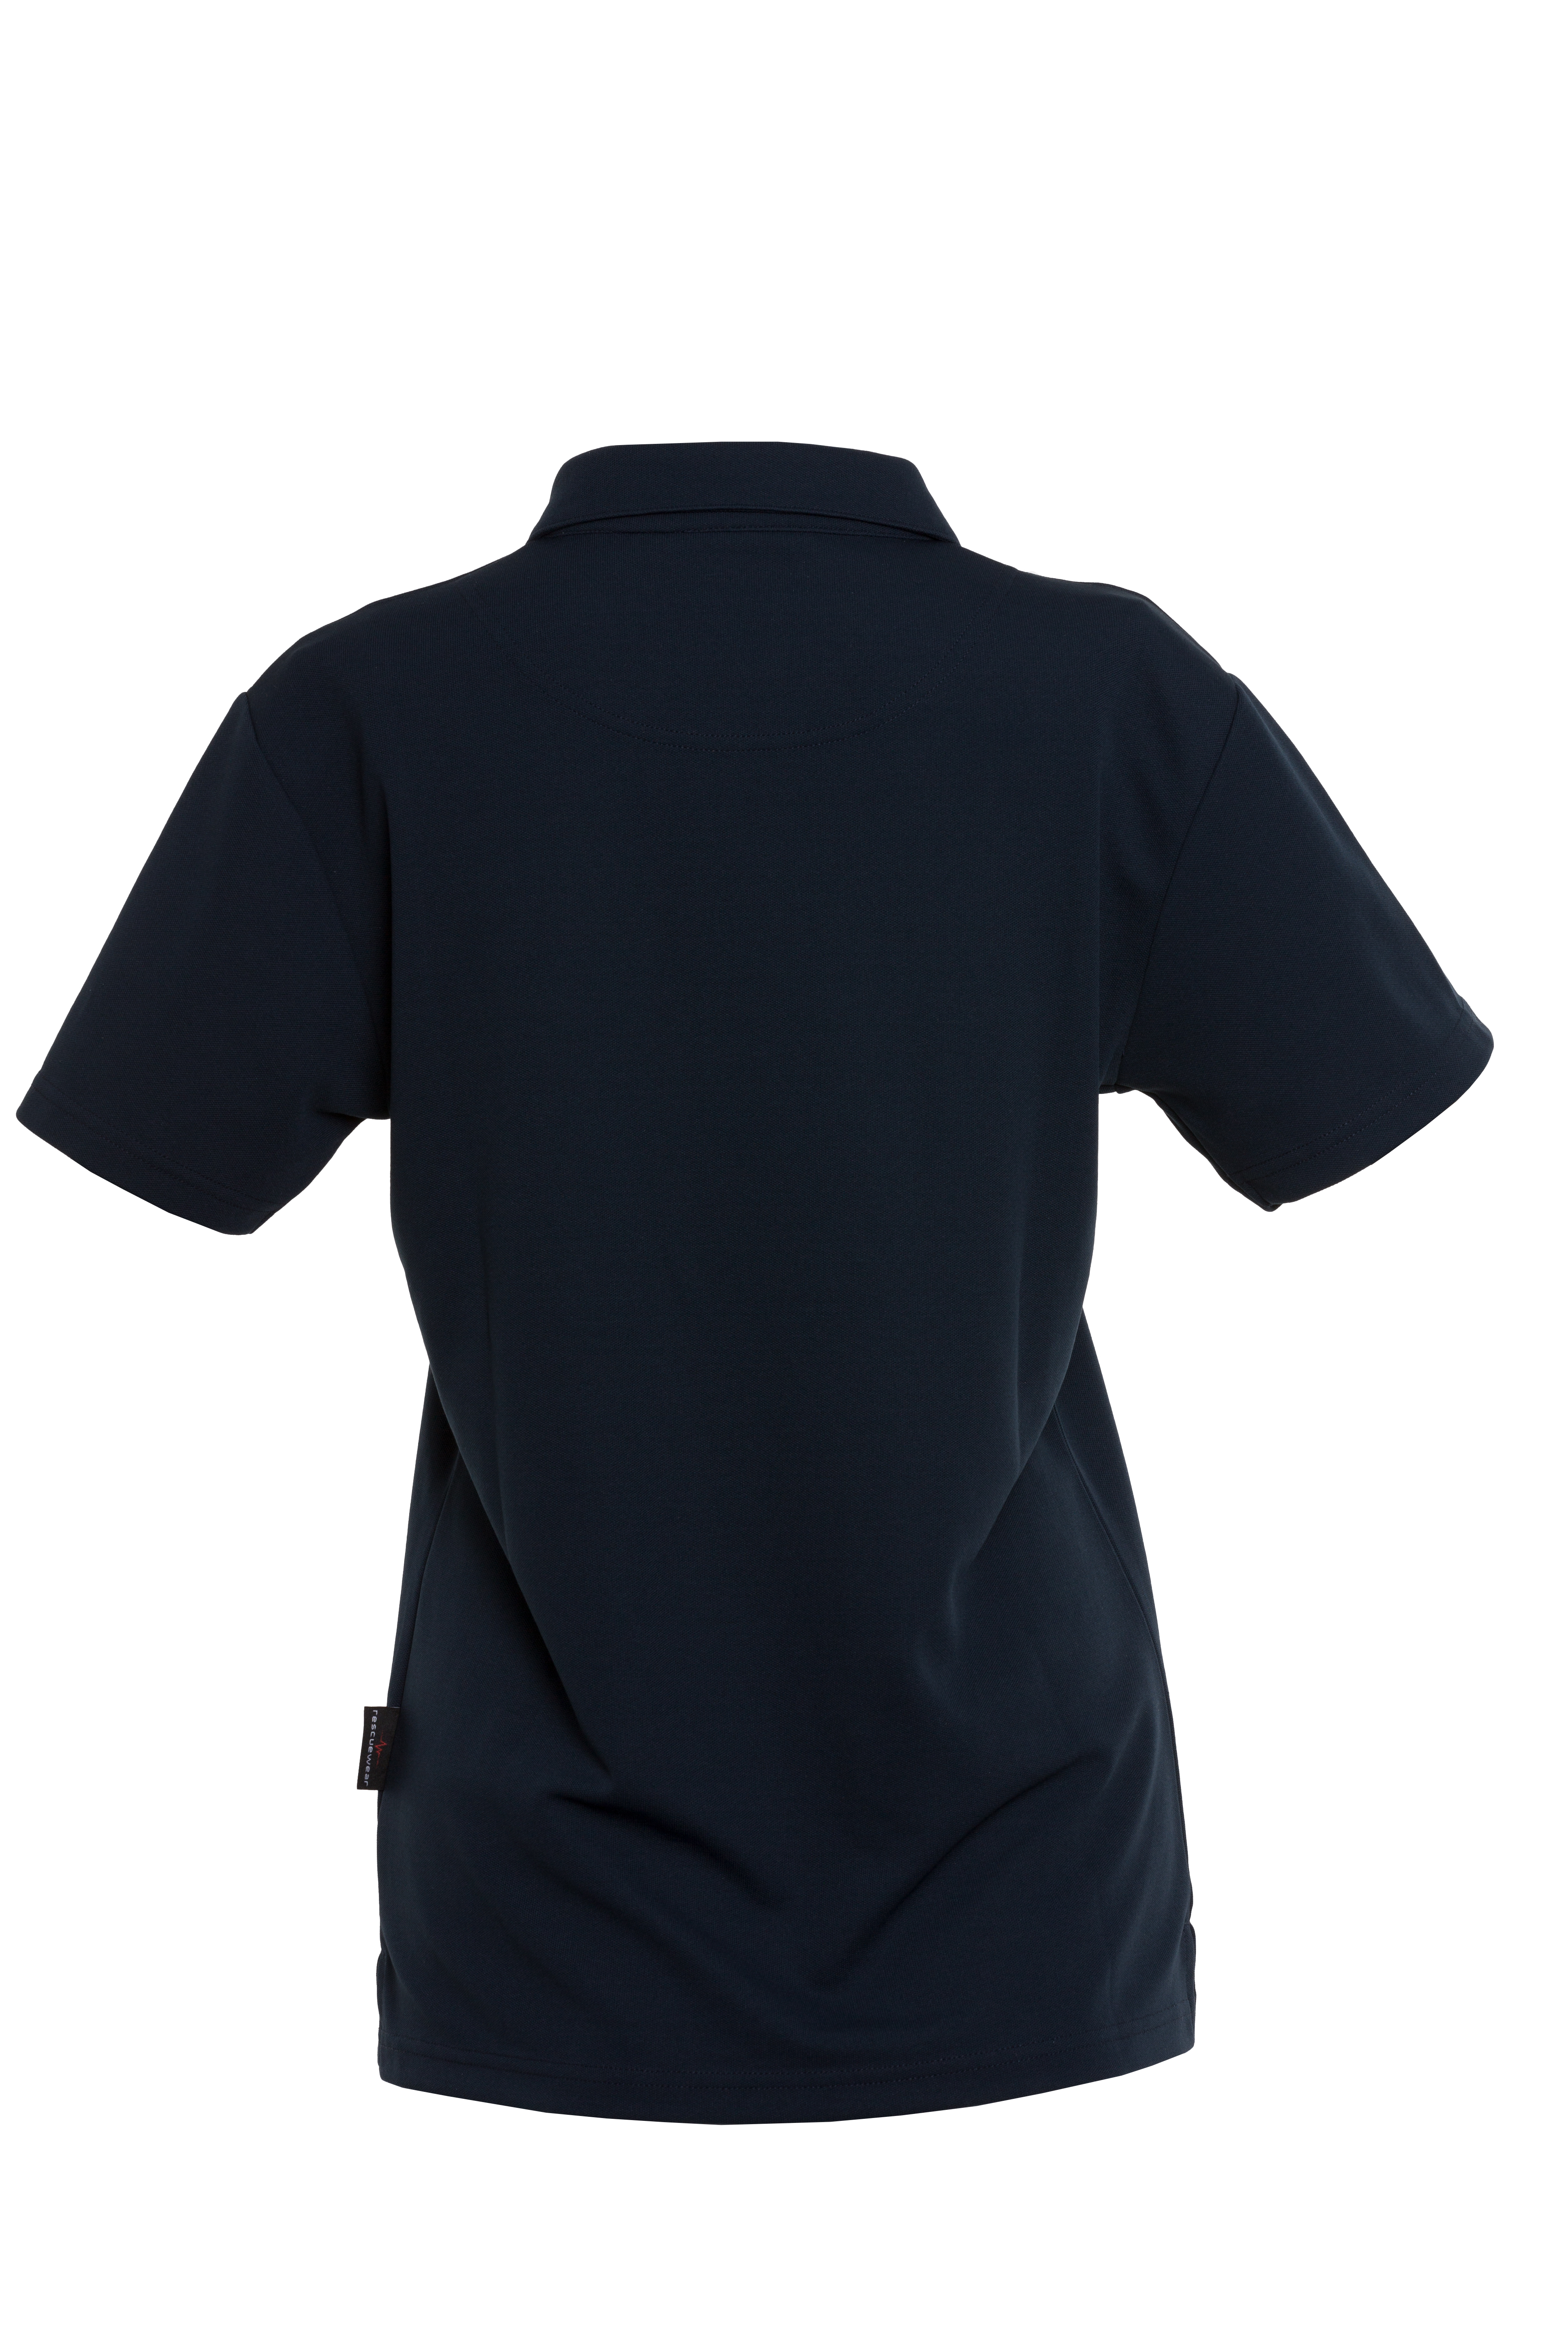 Rescuewear Damen Poloshirt 33200W kurze Ärmel Basic Marineblau `W-Linie` - 44